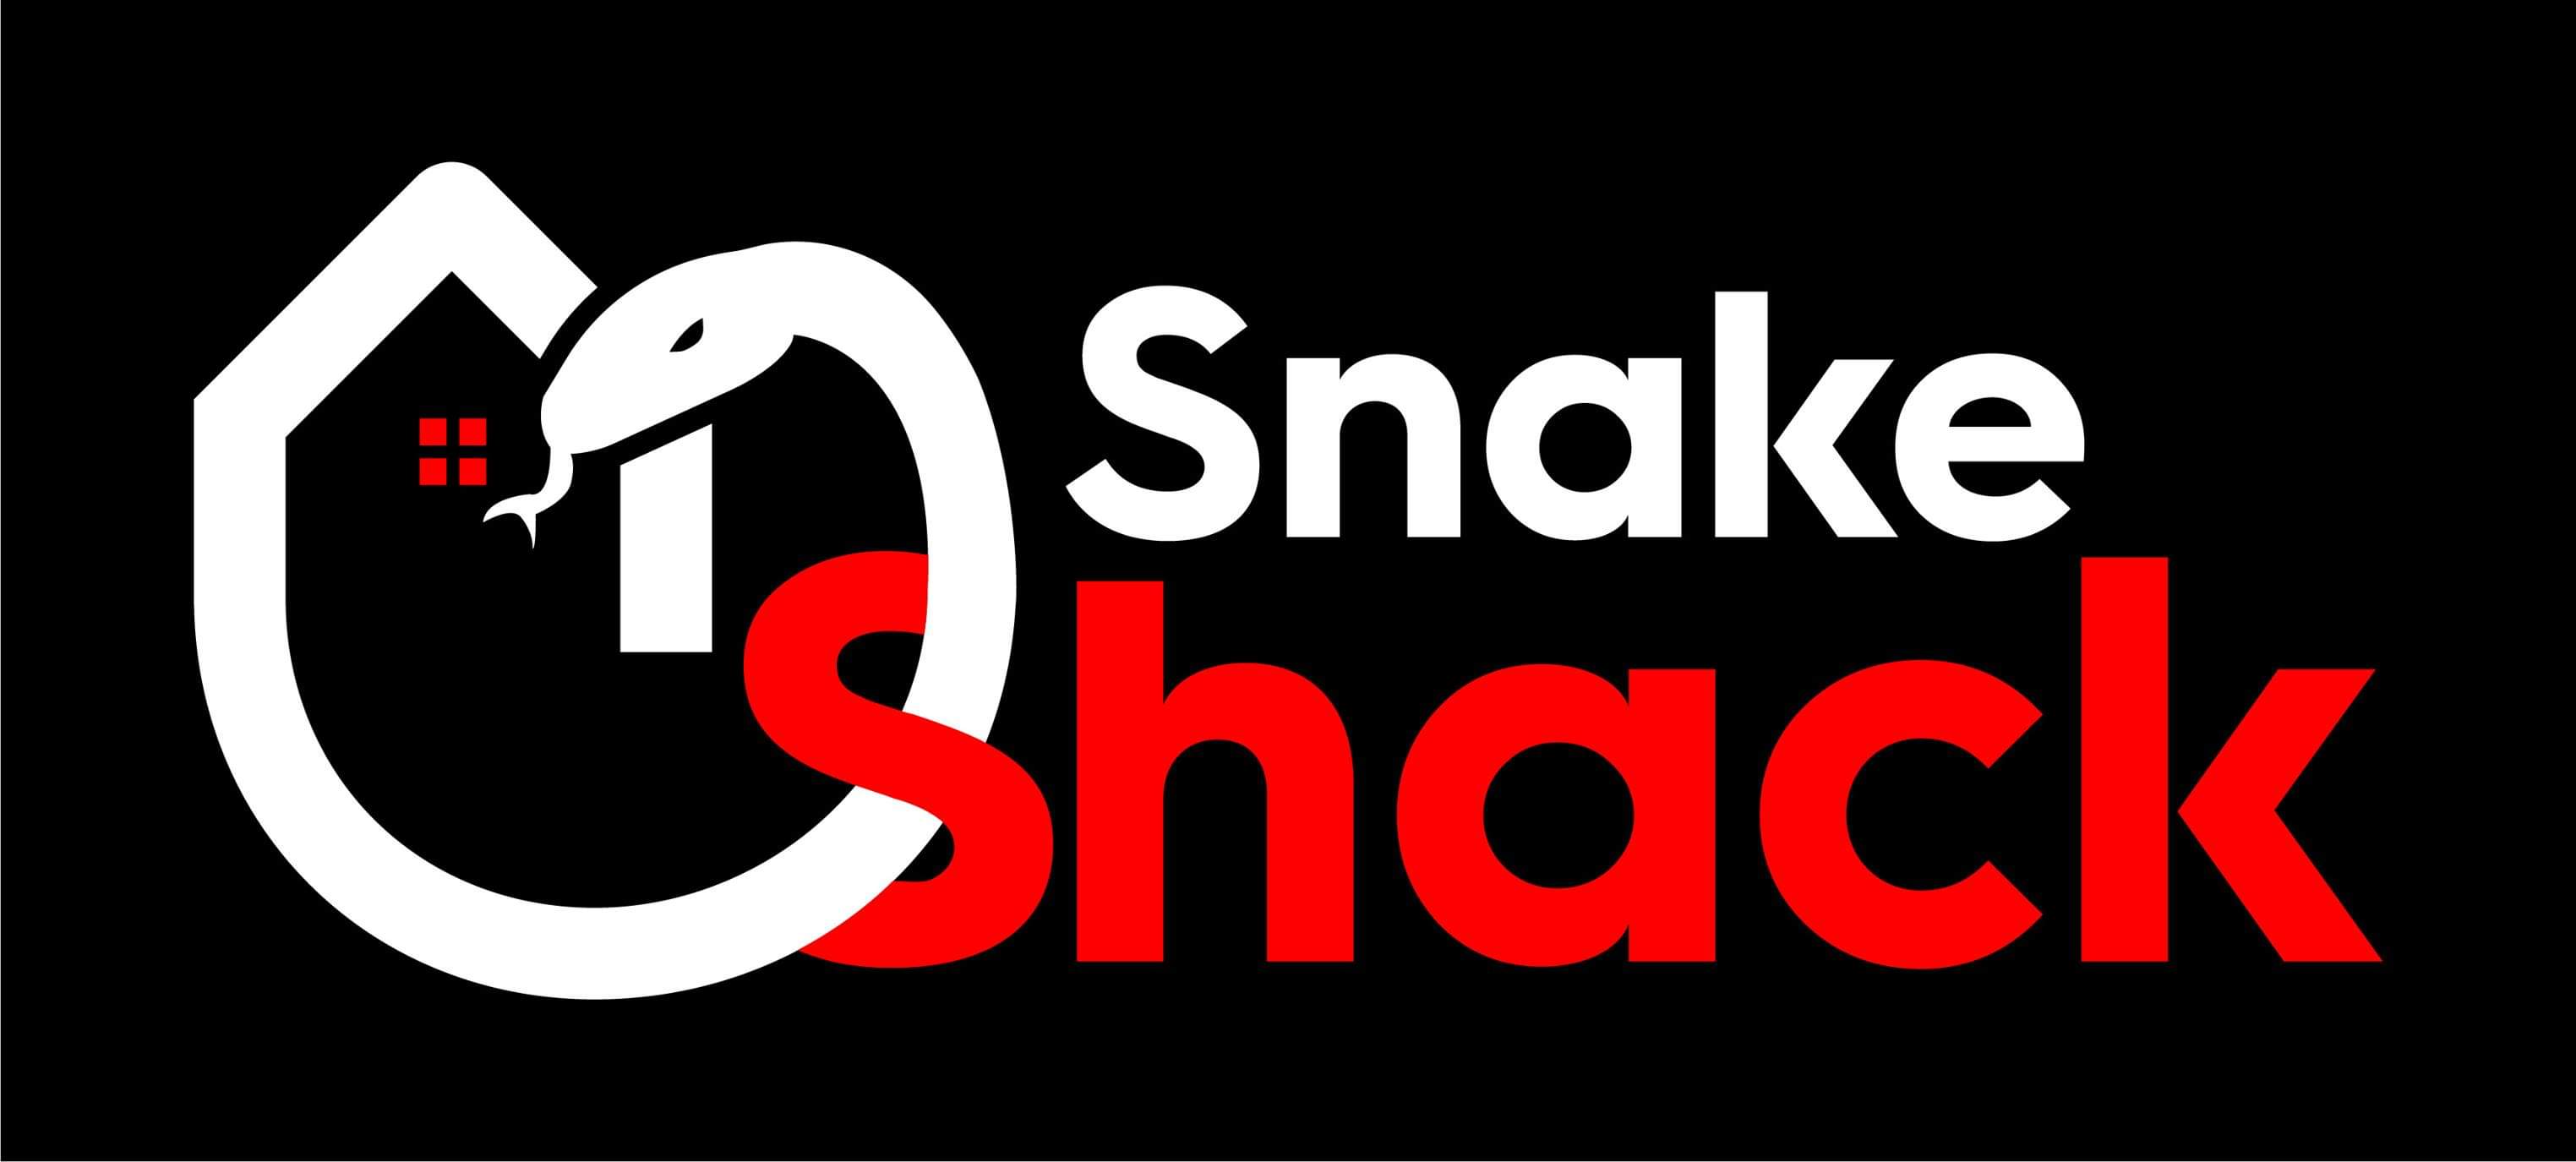  Snake Shack